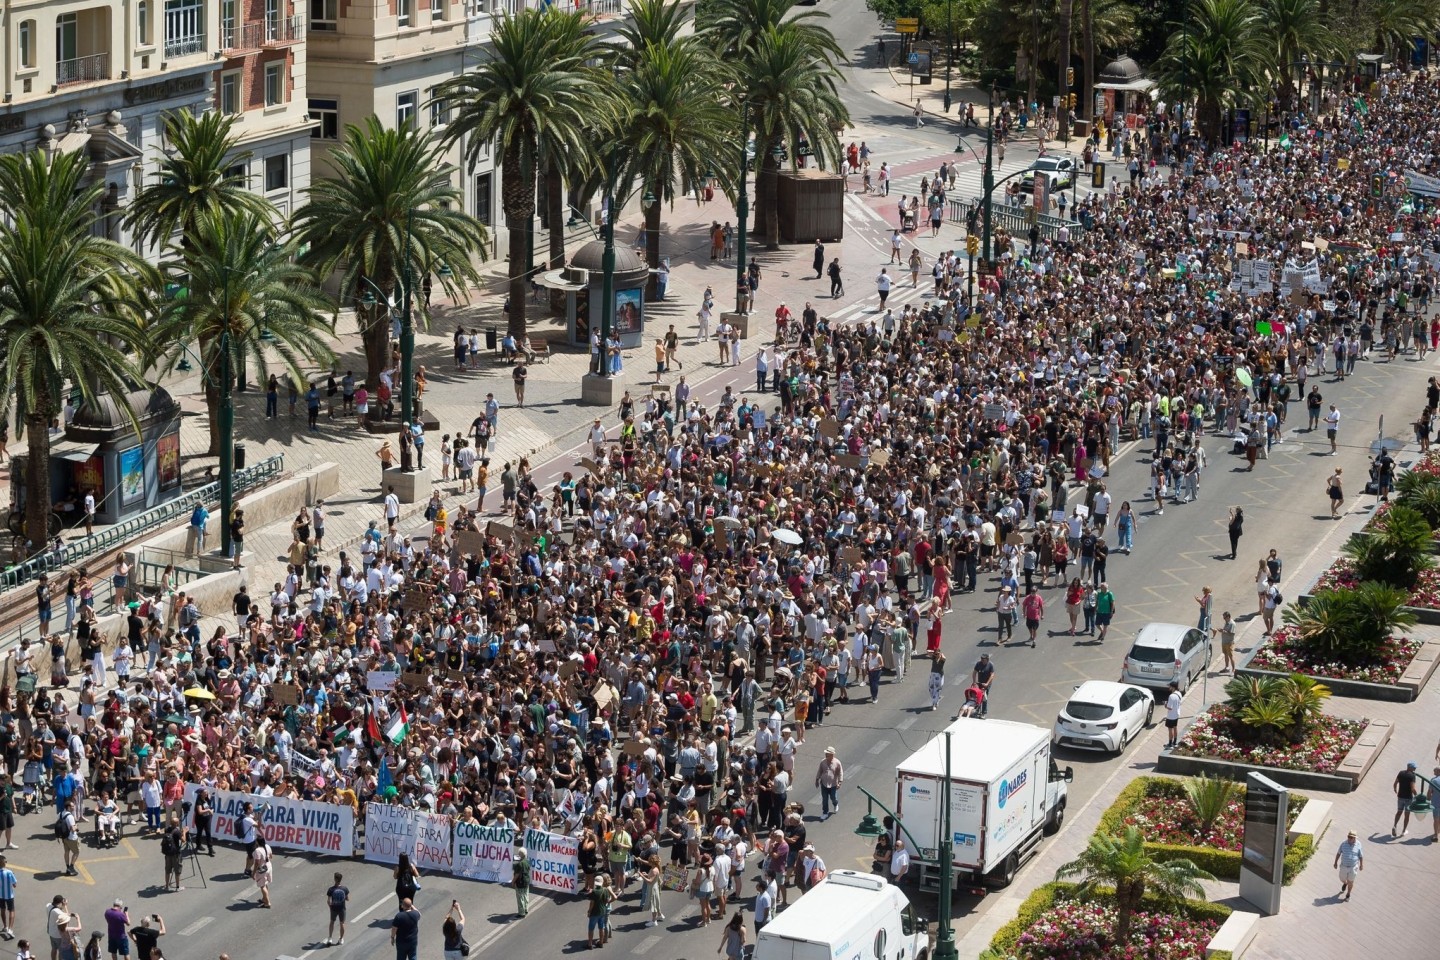 Tausende Menschen demonstrieren in Málaga gegen Massentourismus und hohe Mieten.